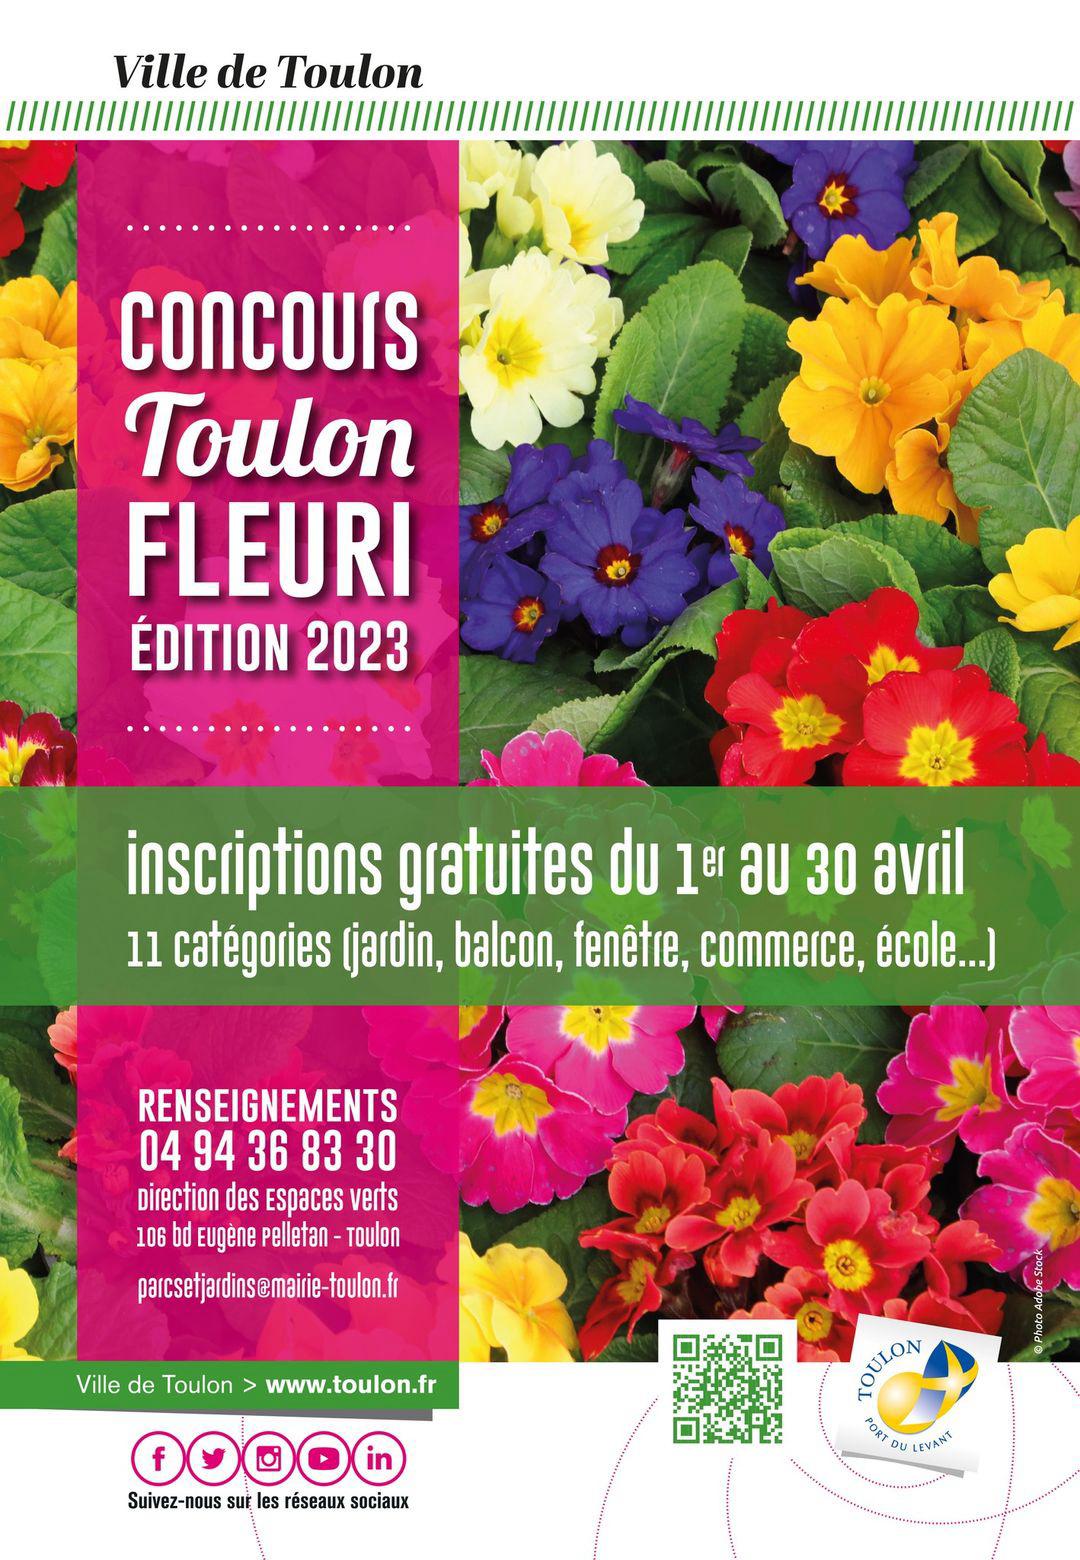 Concours Toulon Fleuri : inscriptions du 1er au 30 avril